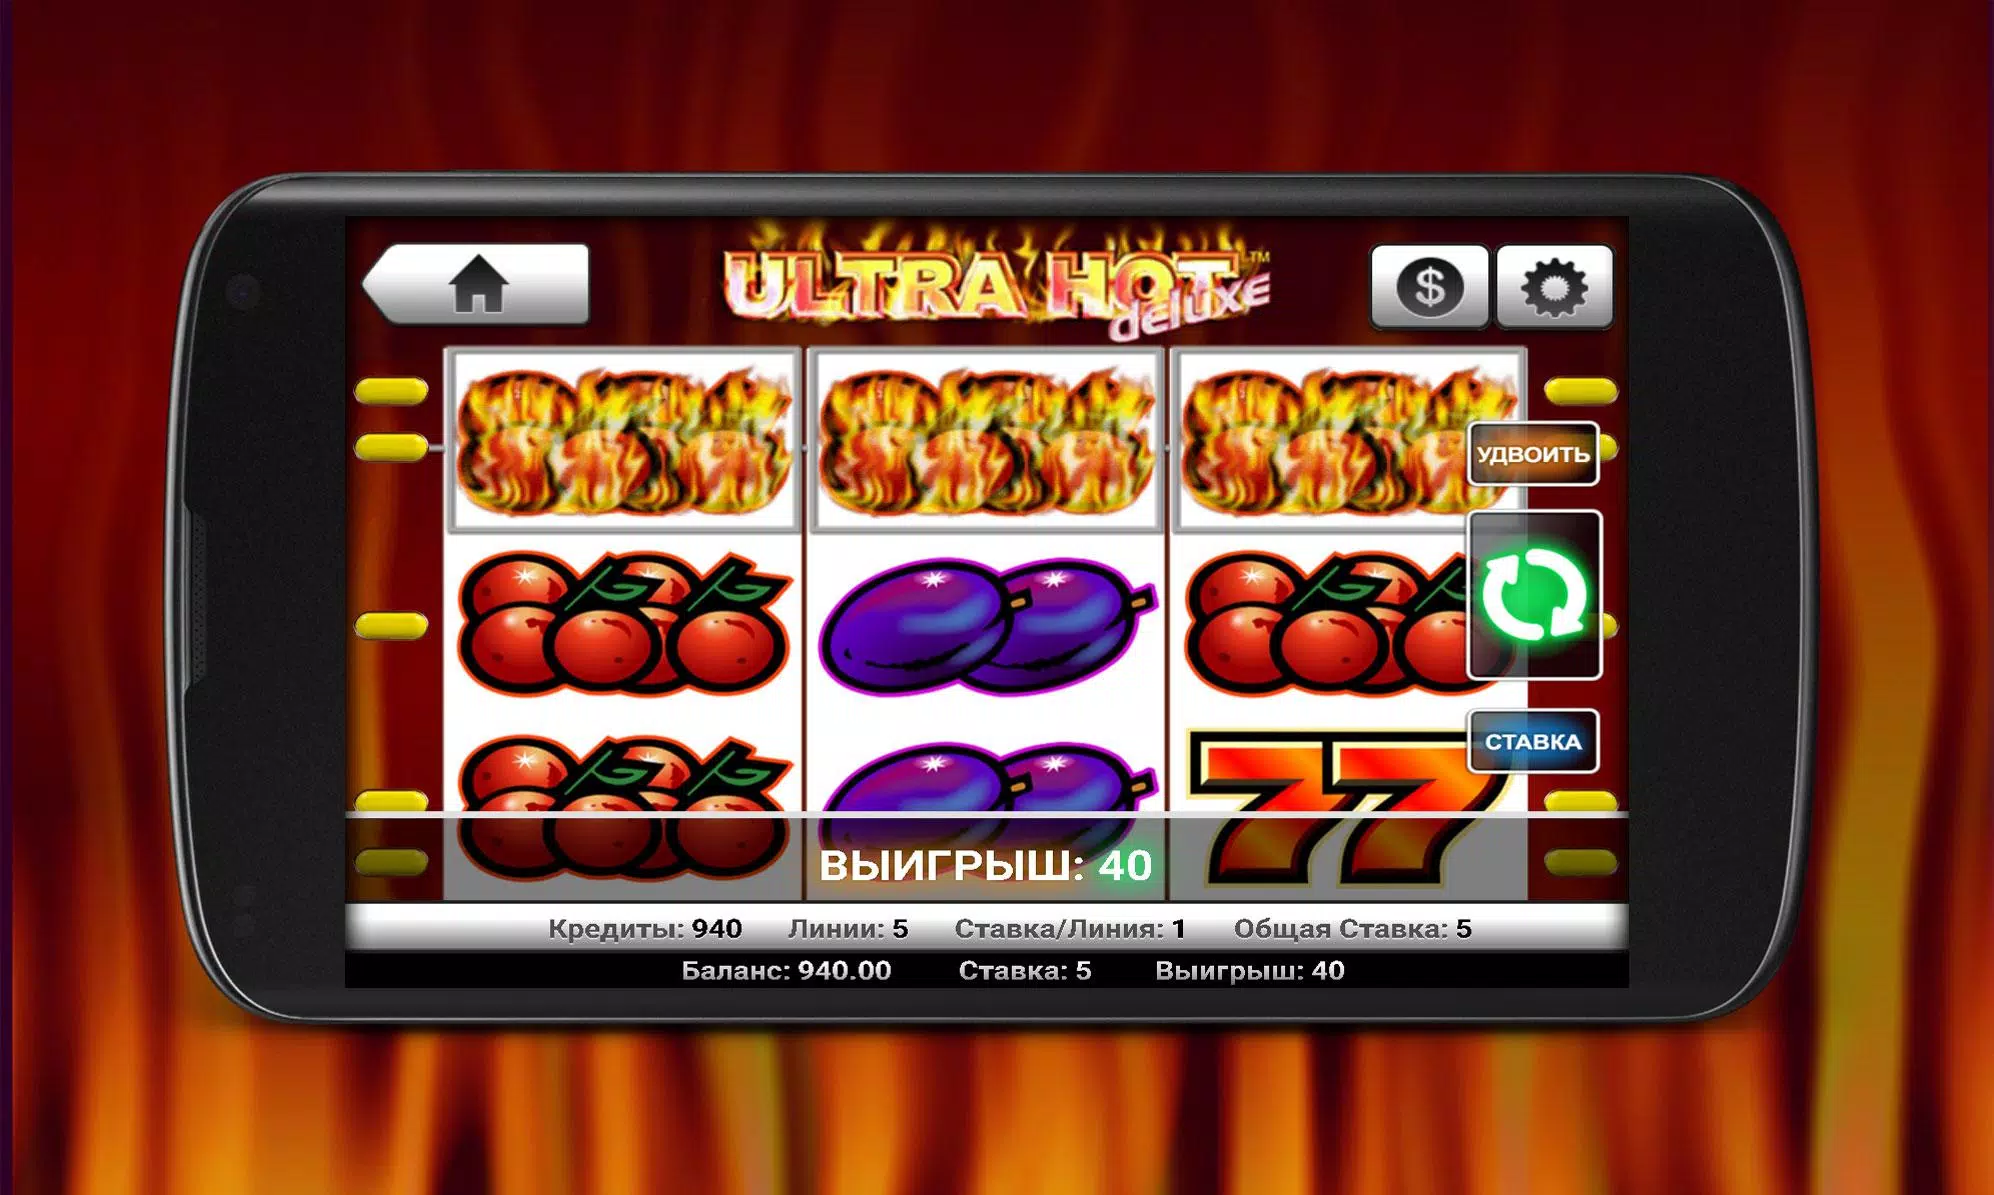 Игровые автоматы в русском казино карты играть бесплатно пасьянс коврик на